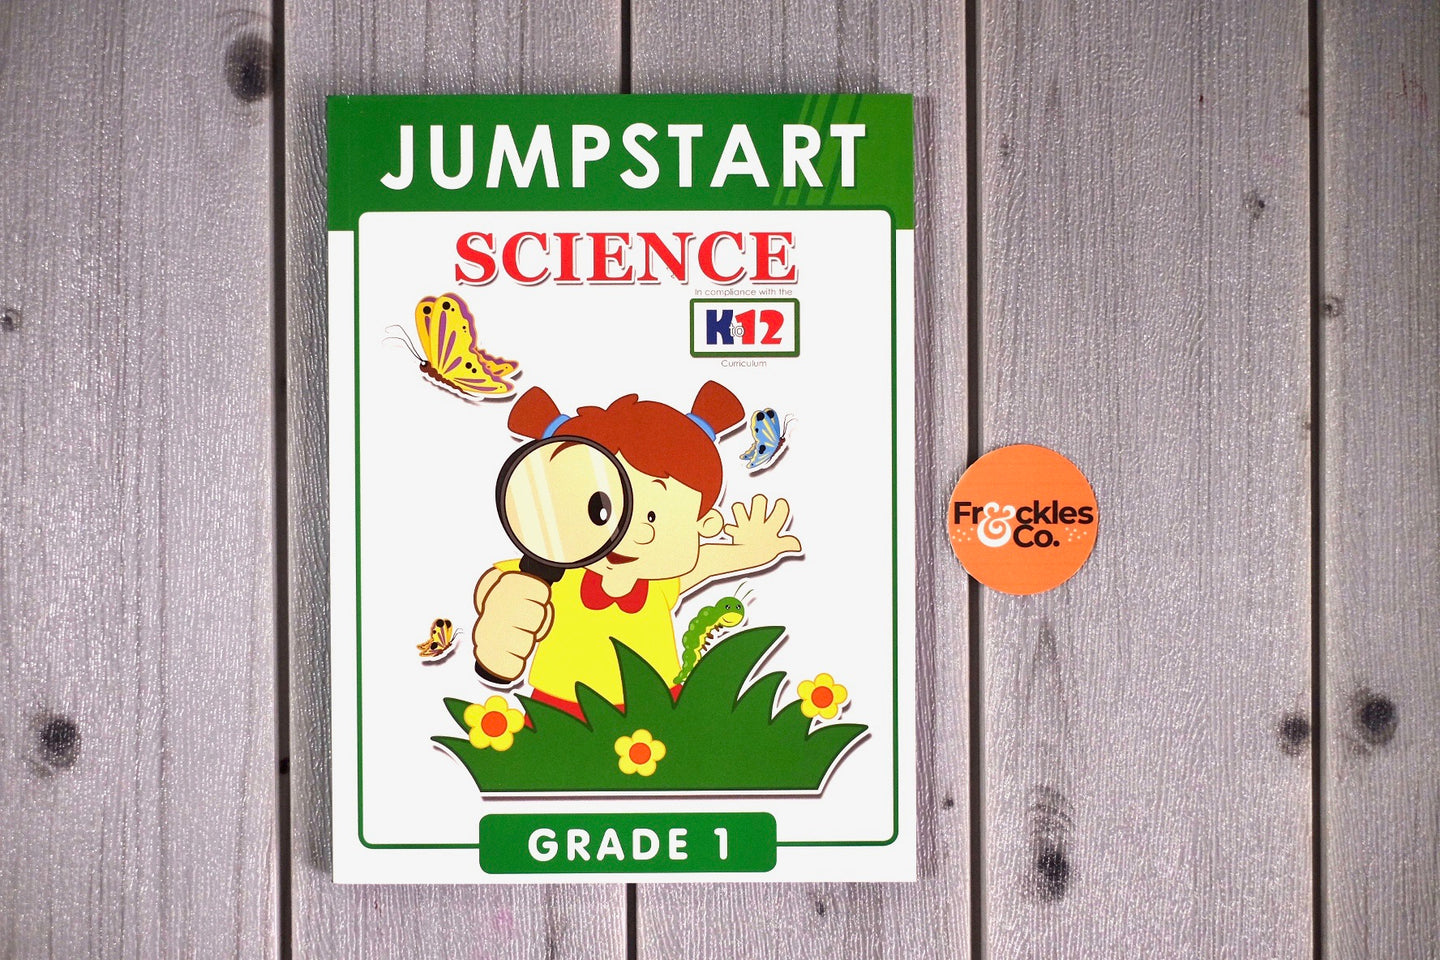 Jumpstart Science